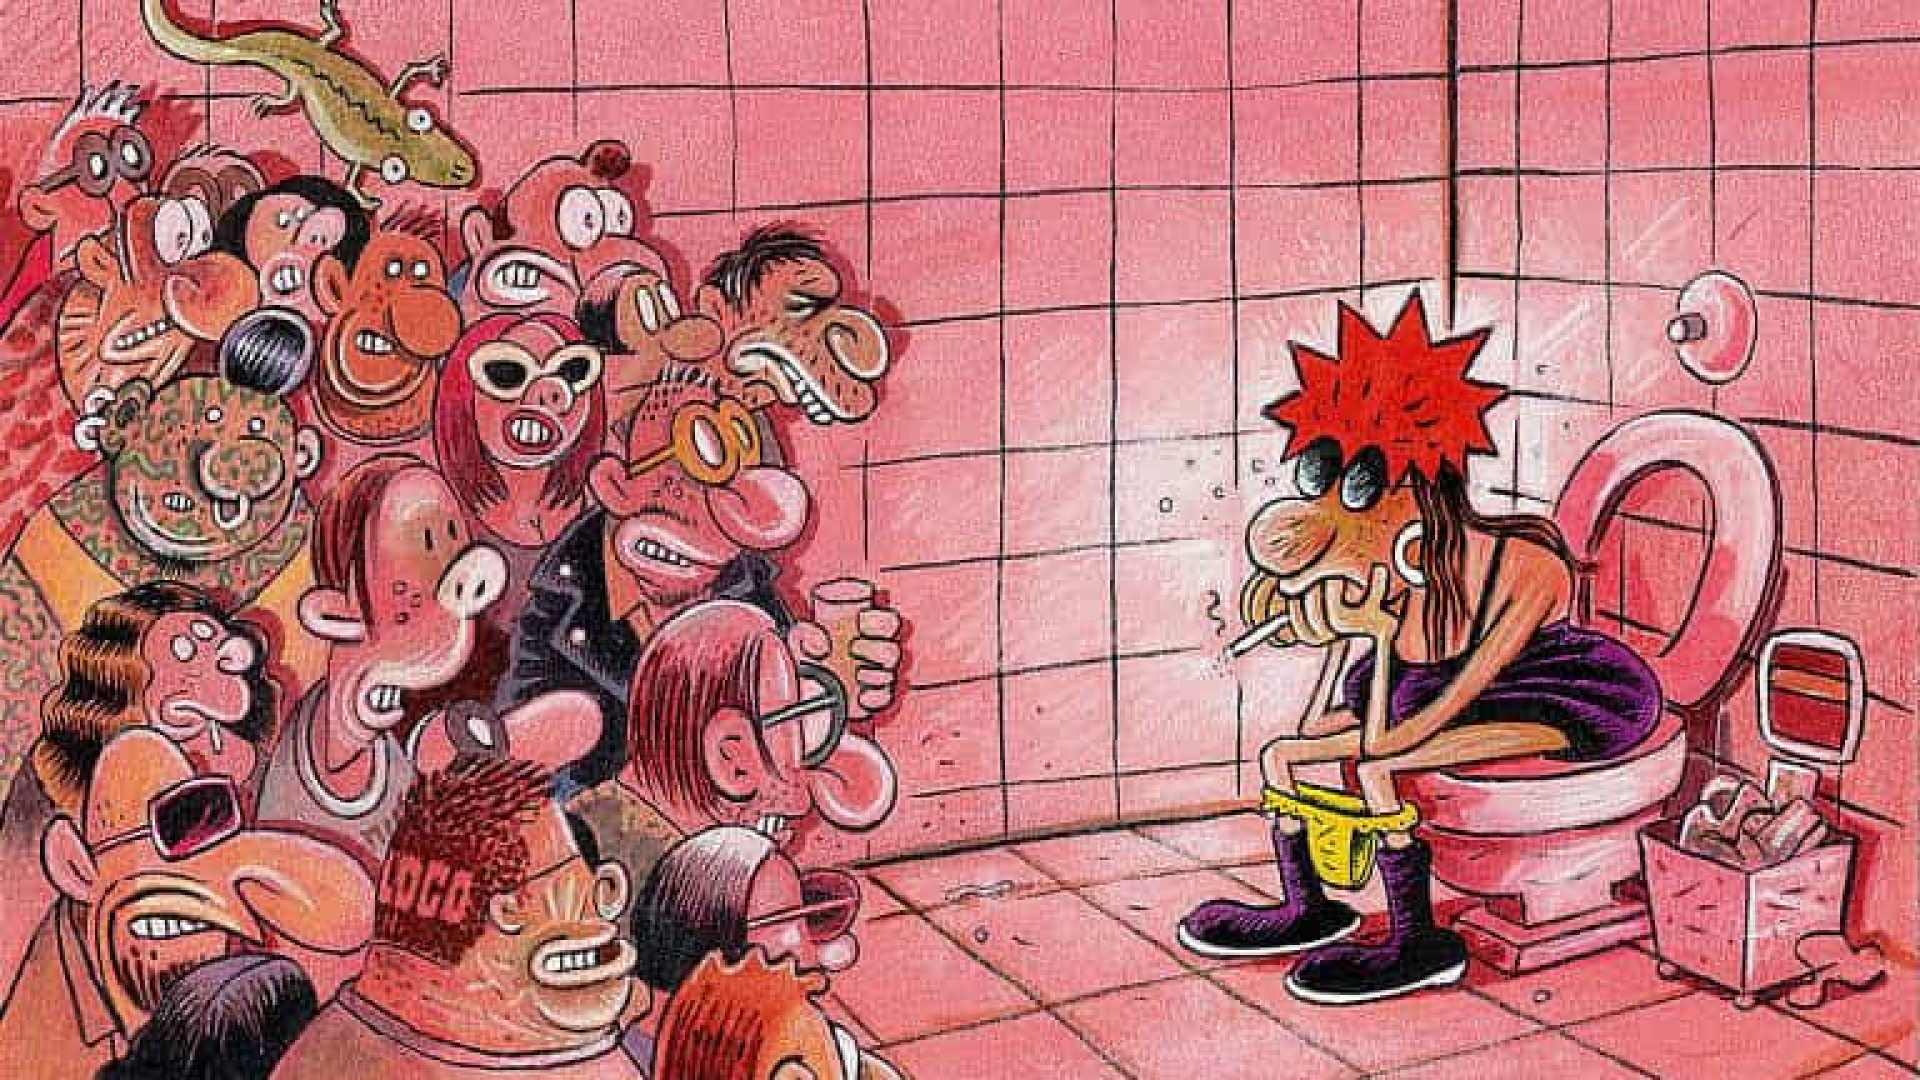 Angeli se despede da carreira de cartunista e encerra uma era dos quadrinhos no Brasil